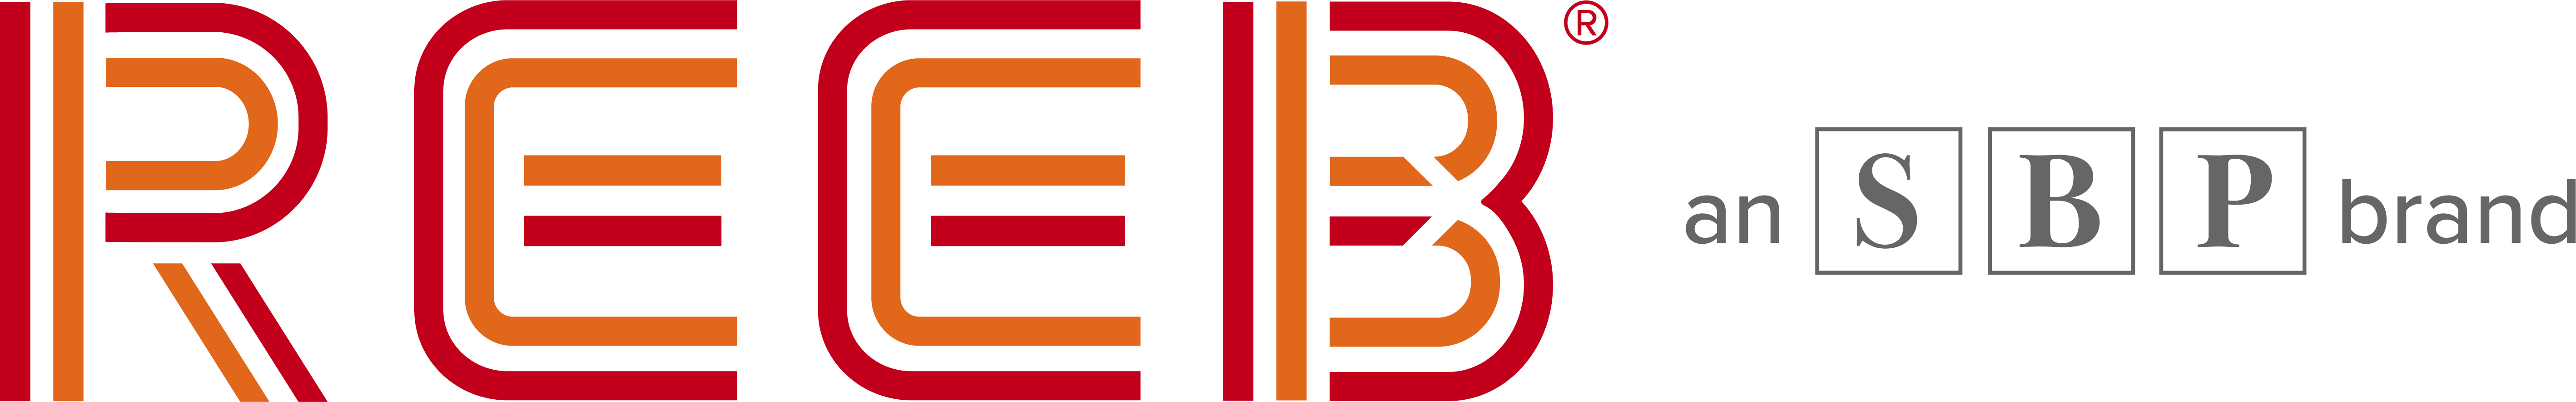 Reeb logo